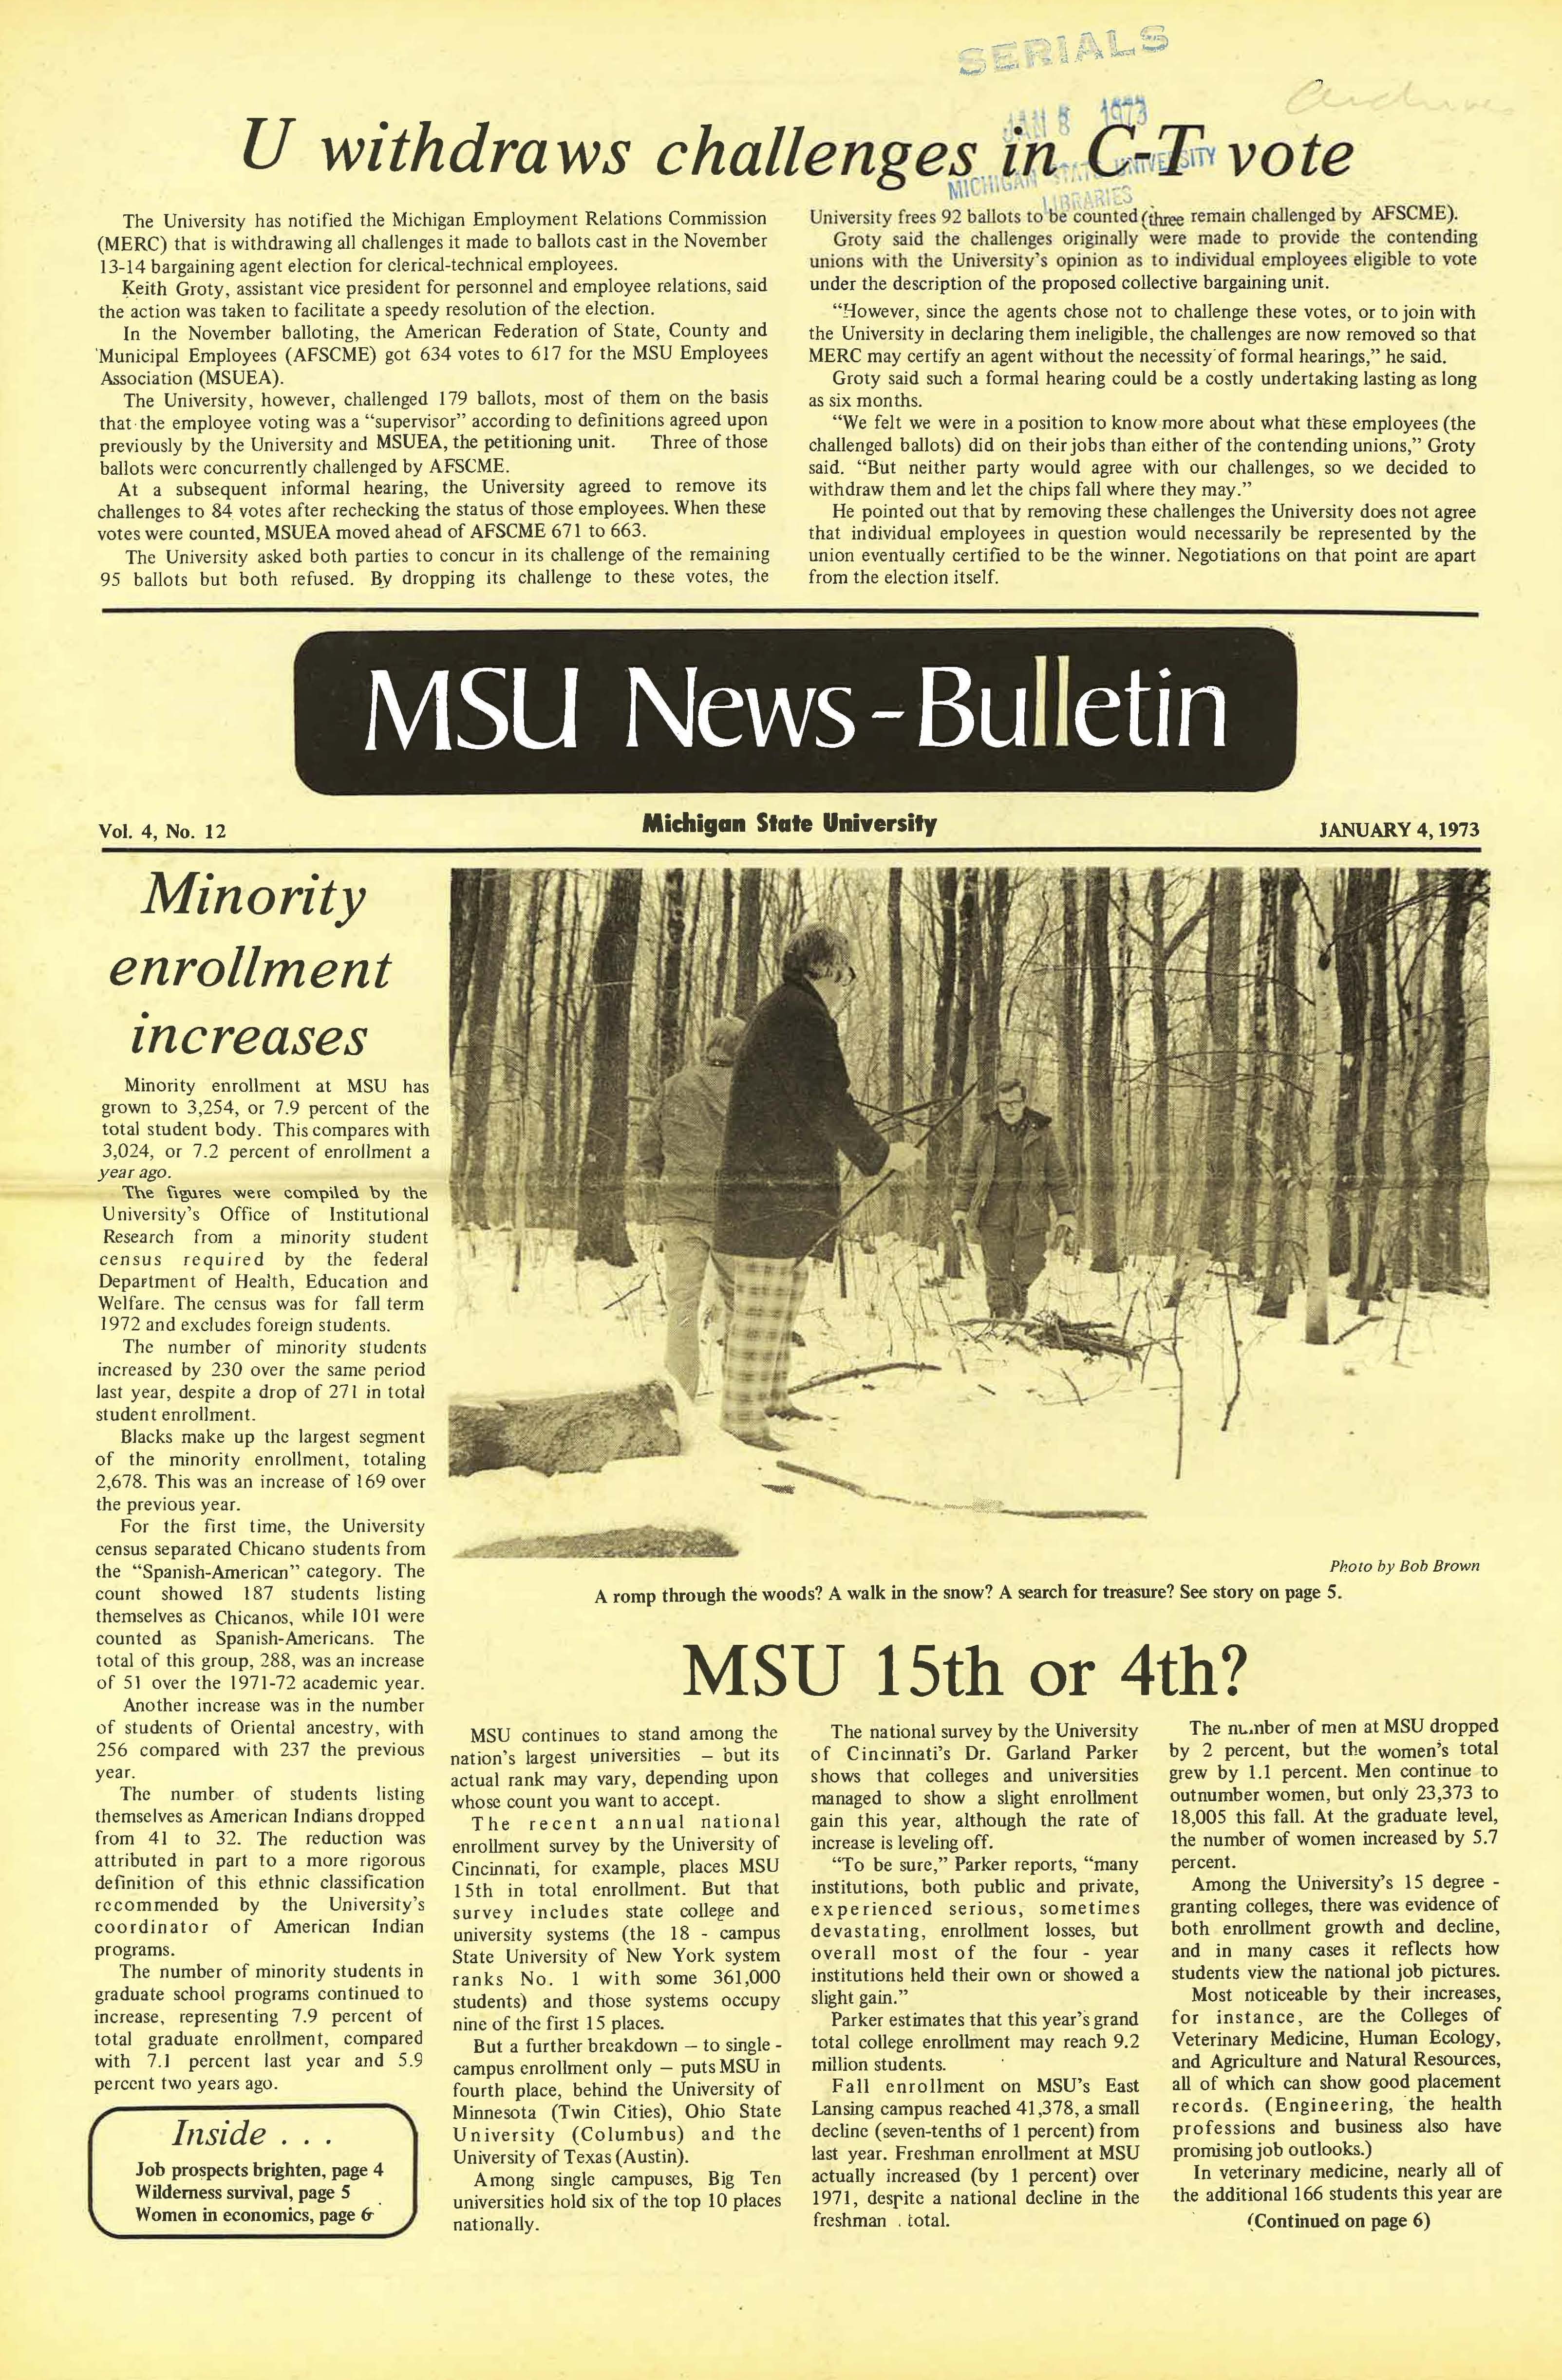 MSU News Bulletin, vol. 4, No. 23, April 5, 1973